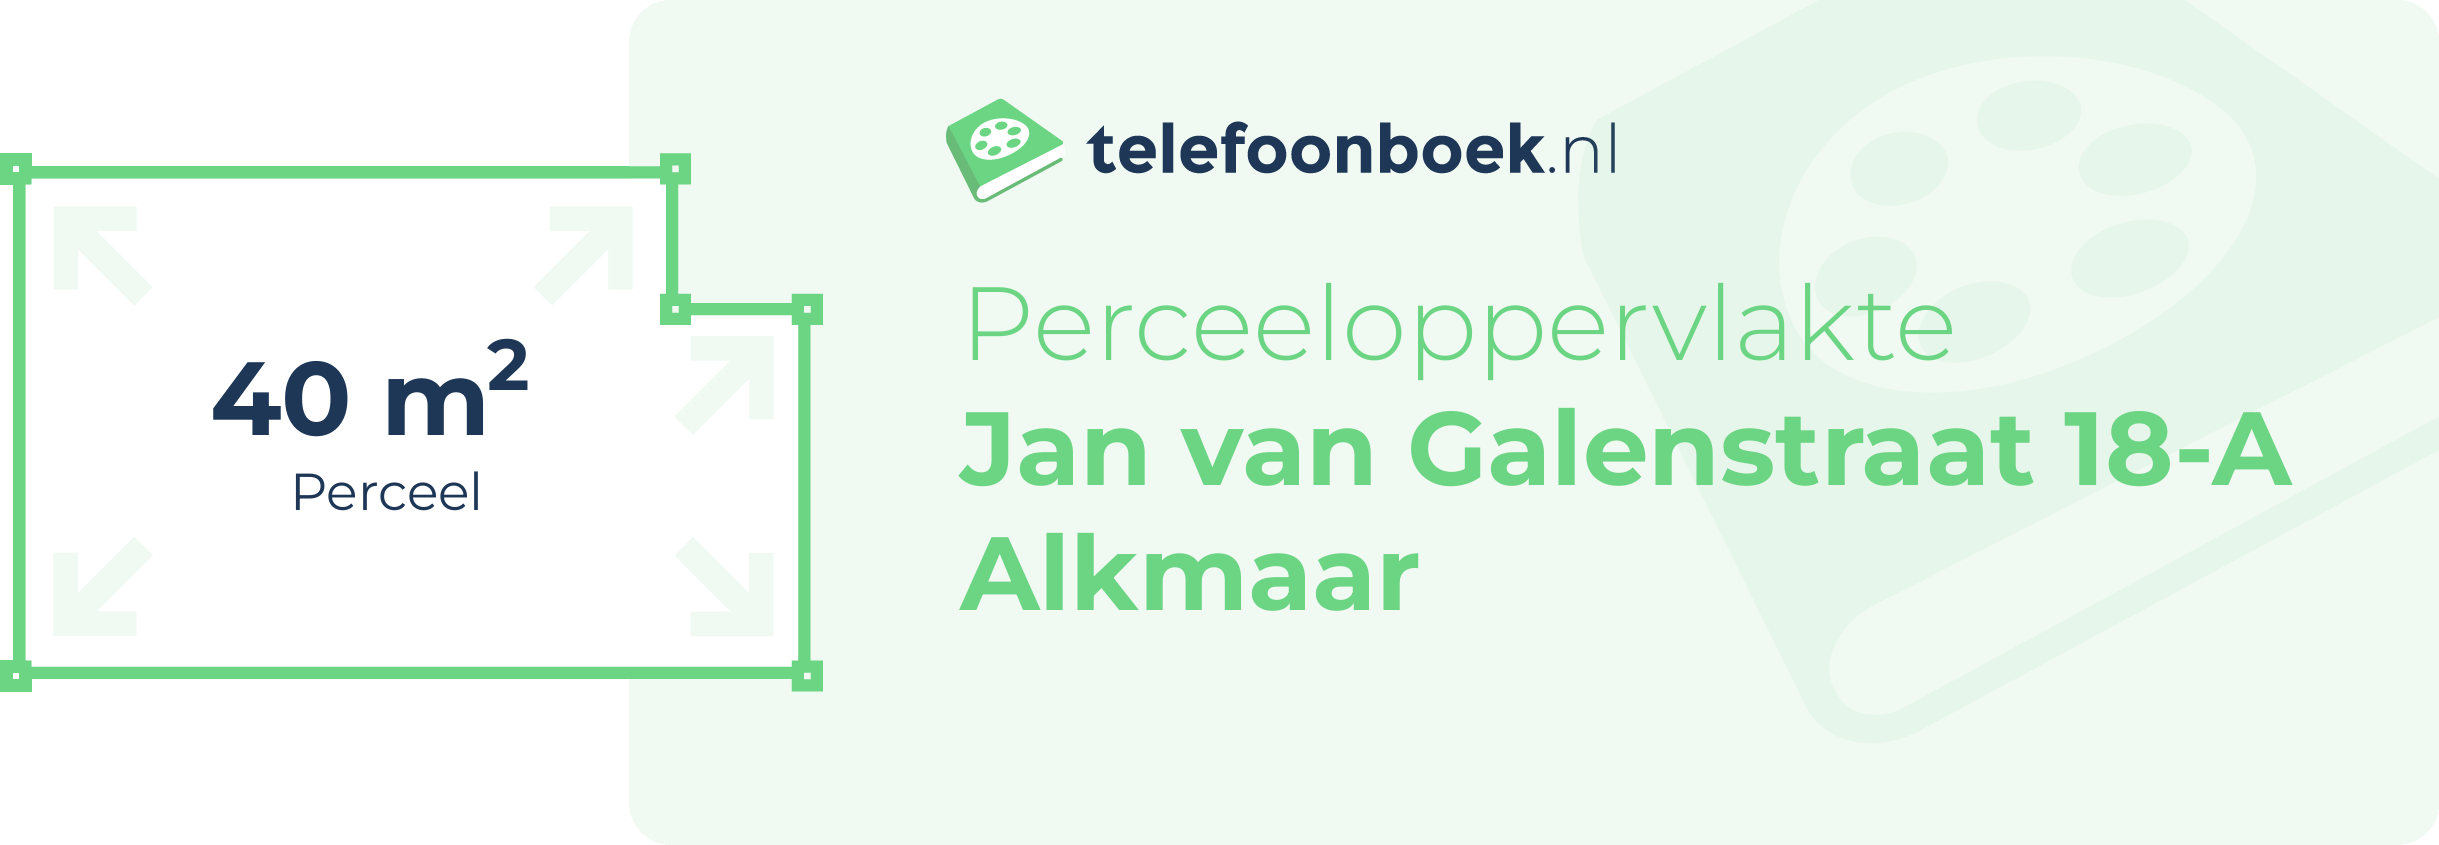 Perceeloppervlakte Jan Van Galenstraat 18-A Alkmaar